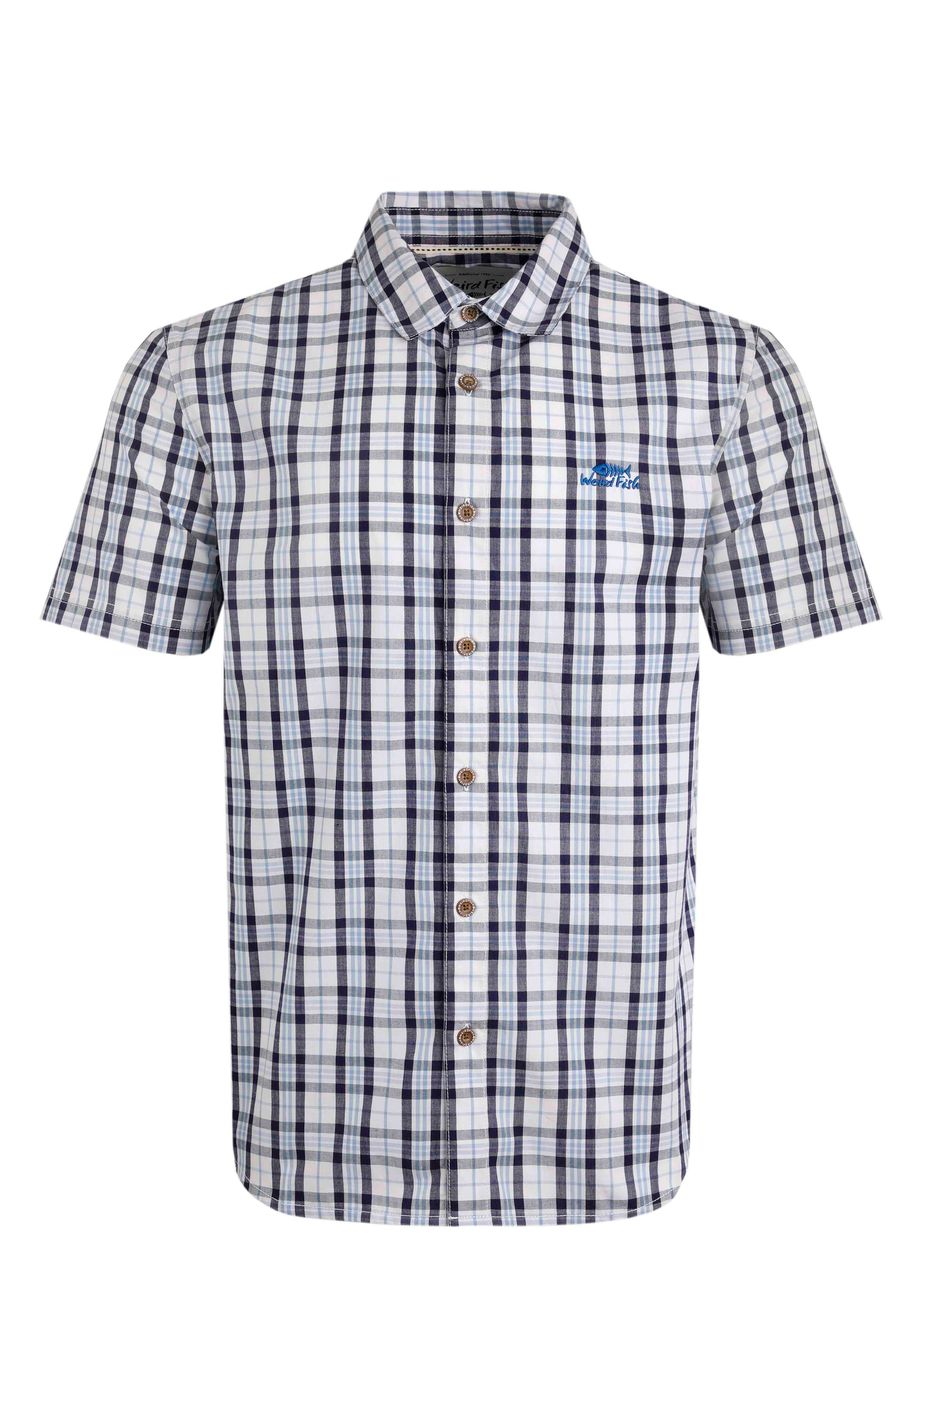 Judd Short Sleeve Check Shirt Blue Mirage